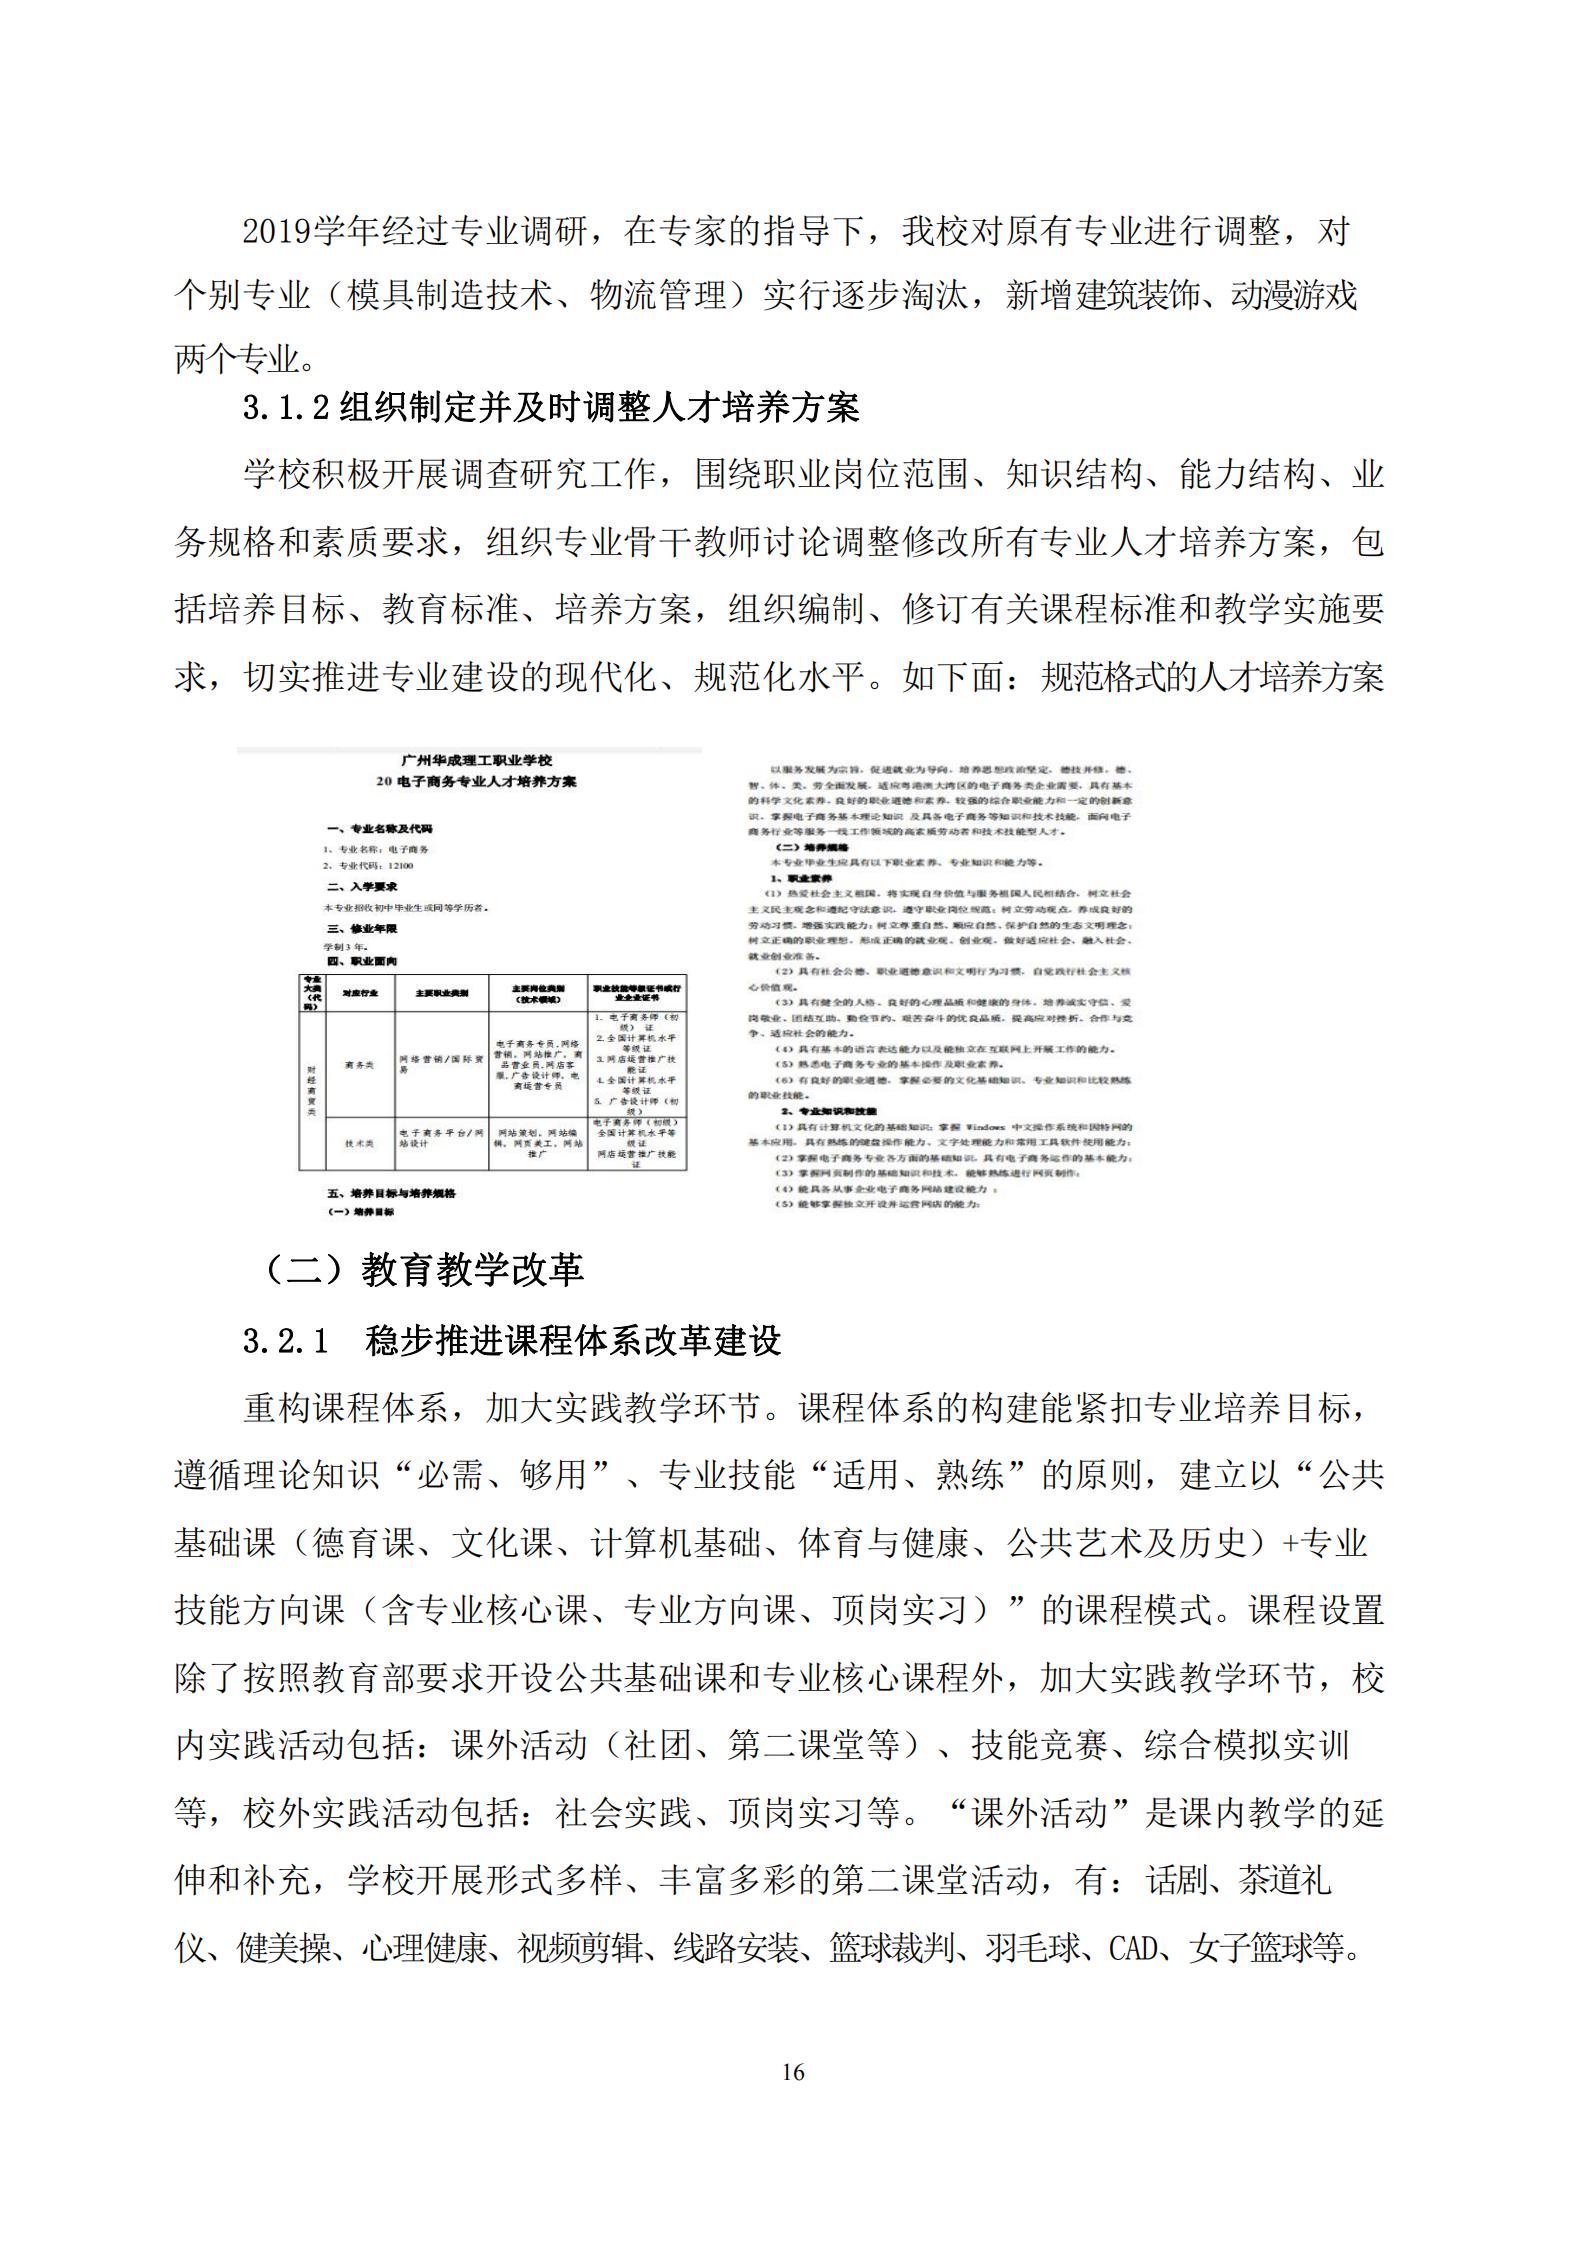 广州华成理工职业技术学校2020年度教育质量报告